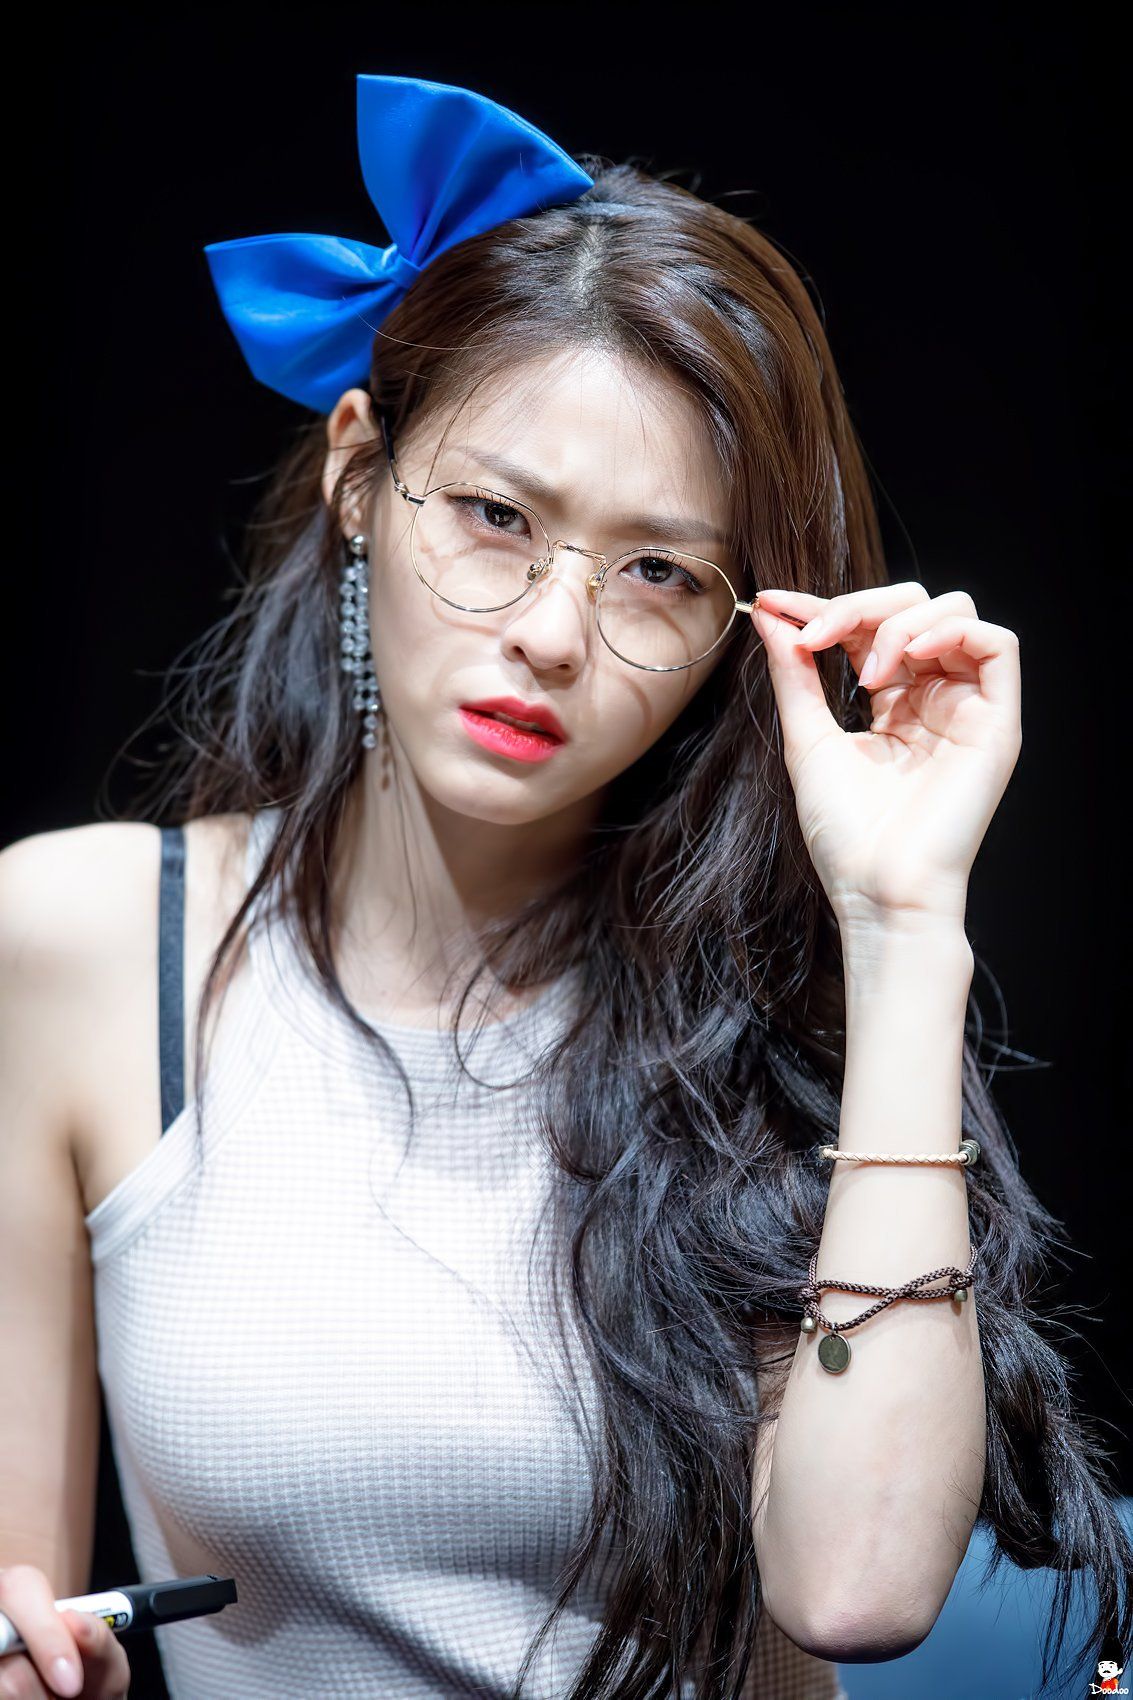 雪炫AOA-2018-Wearing-Glasses-Fan-Sign-Event-Suspect-Looking.jpg